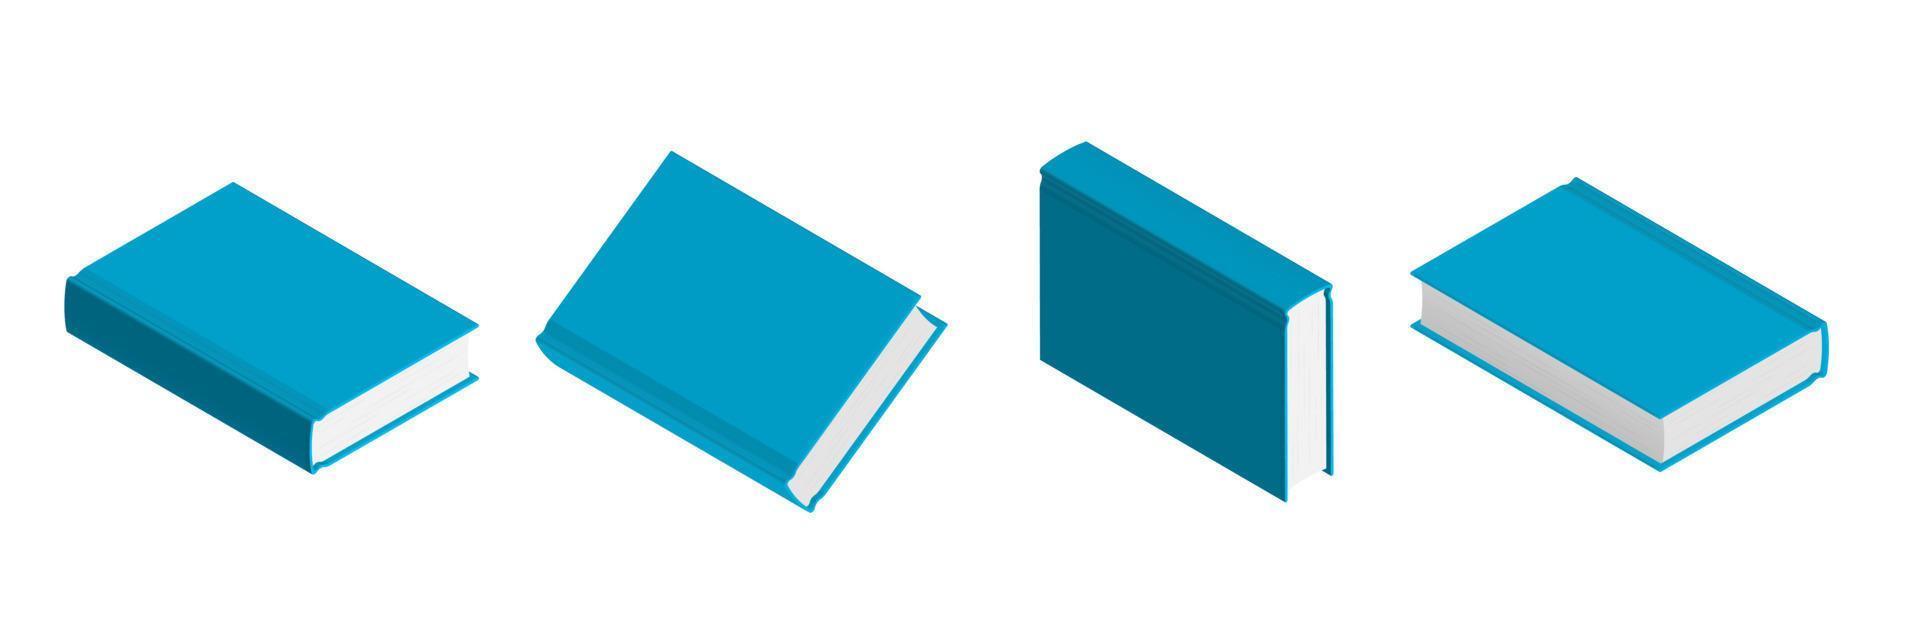 conjunto de livros azuis fechados em diferentes posições para livraria vetor